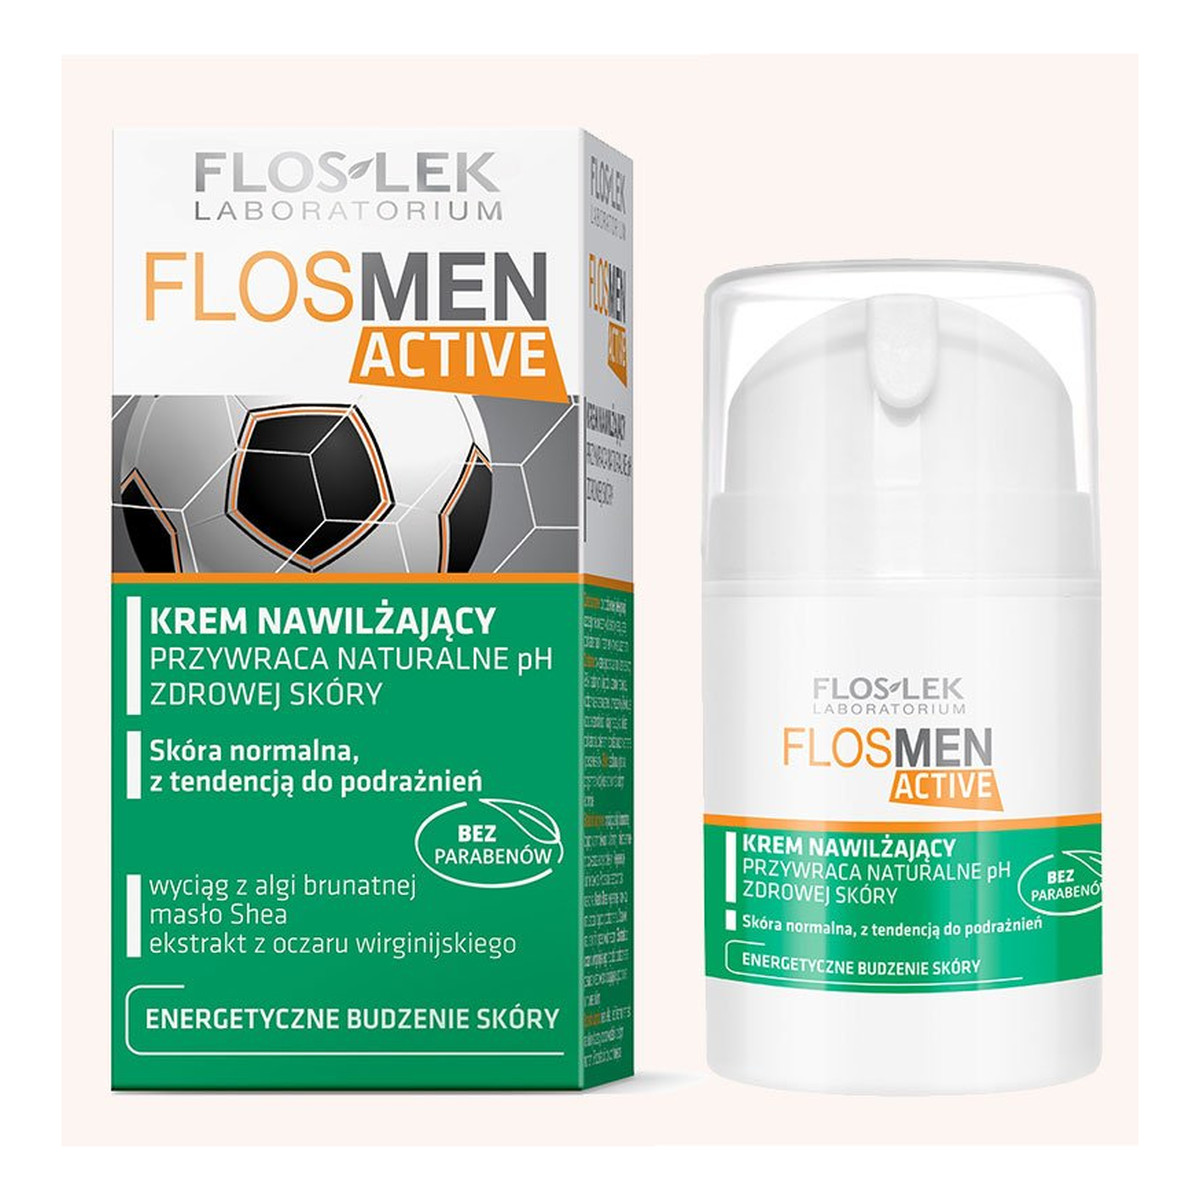 FlosLek FlosMen Active Laboratorium Krem Nawilżający 50ml